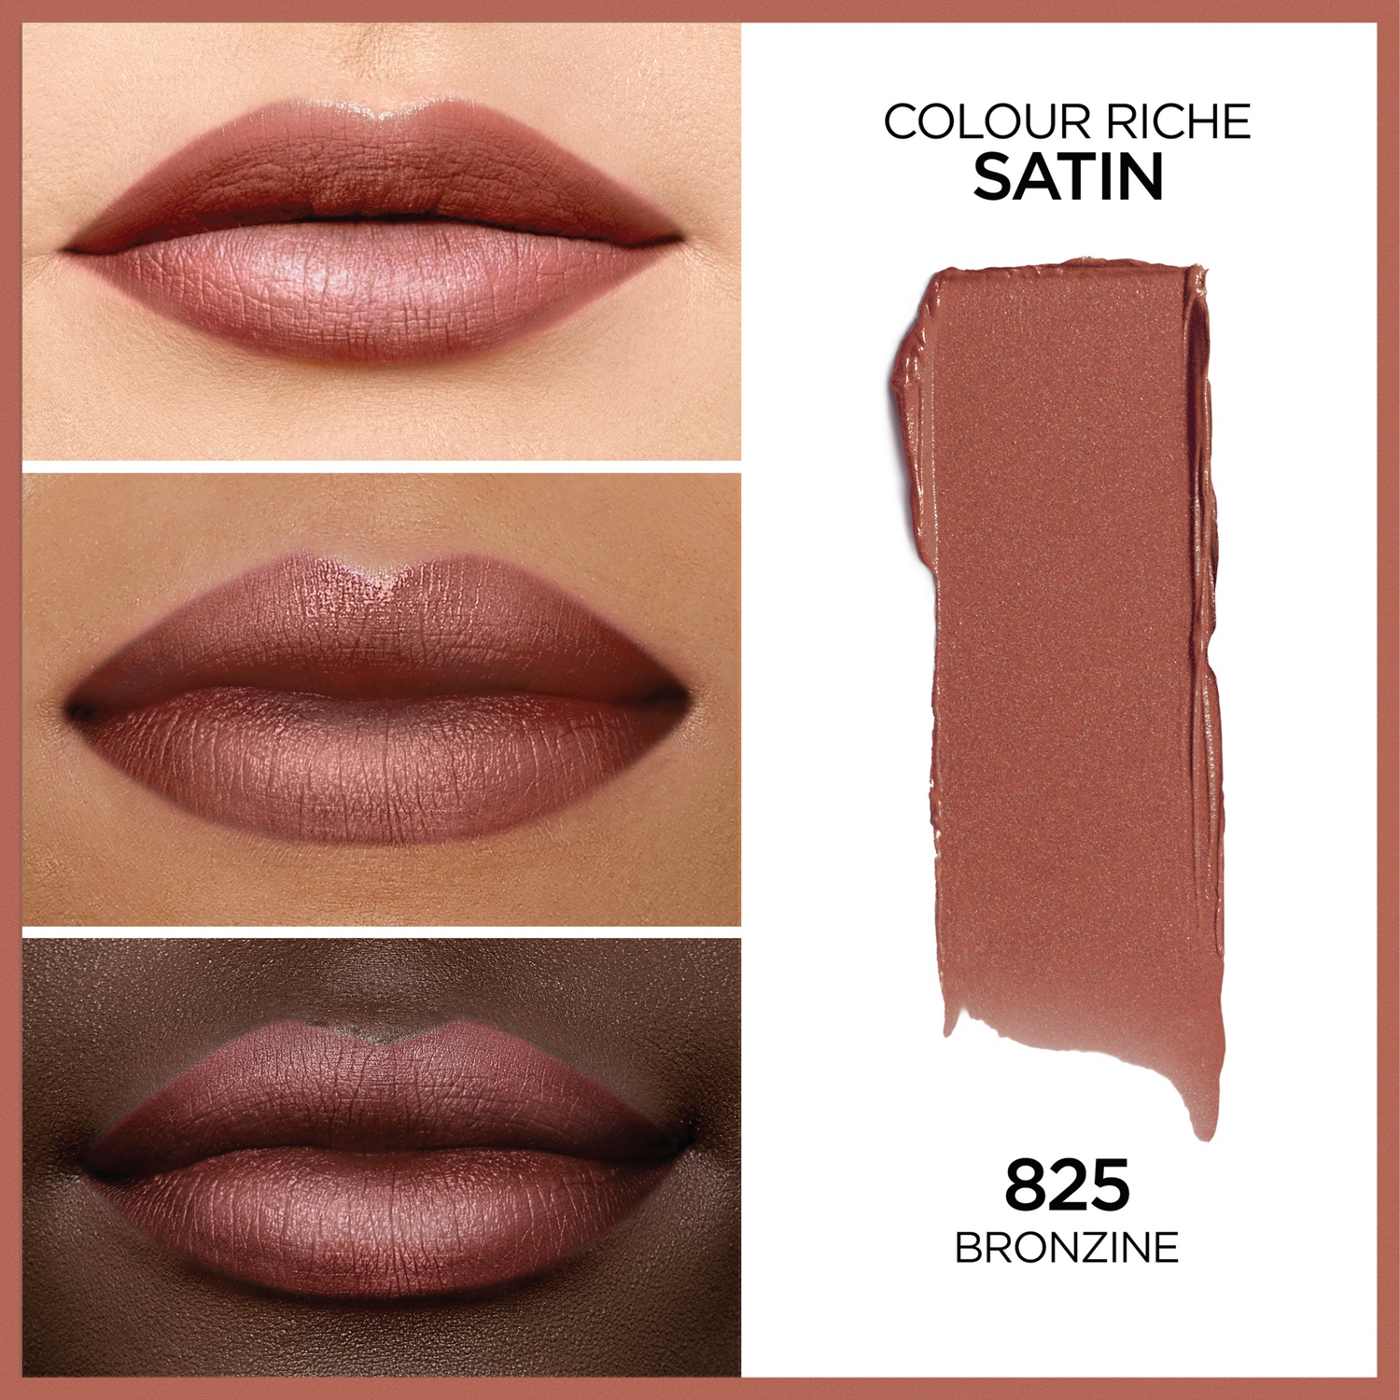 L'Oréal Paris Colour Riche Original Satin Lipstick - Bronzine; image 4 of 5